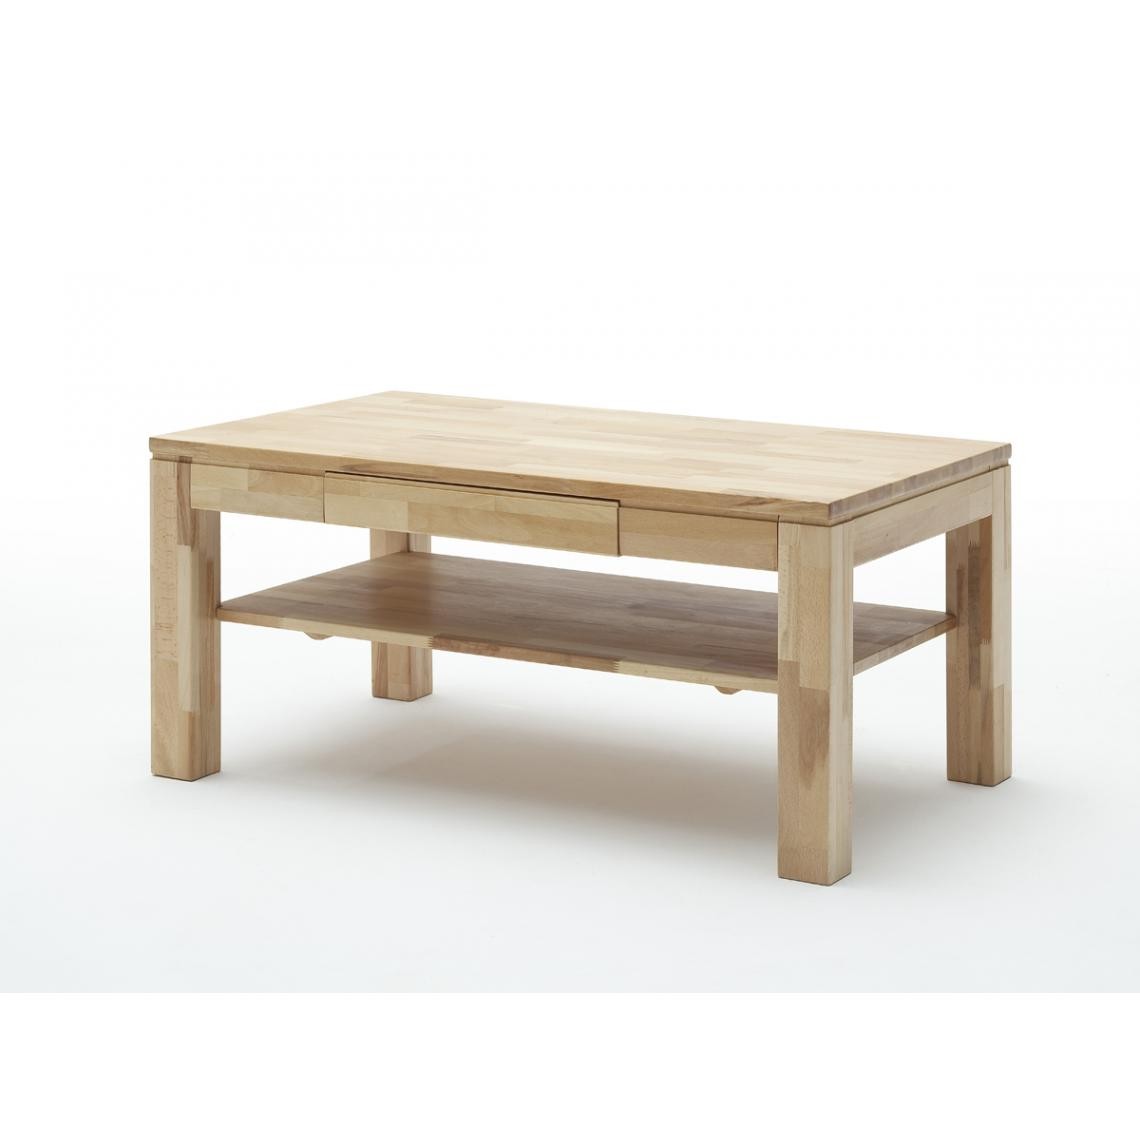 Pegane - Table basse en cœur de hêtre huilé avec tiroir et tablette - L115 x H54 x P70 cm - Tables basses